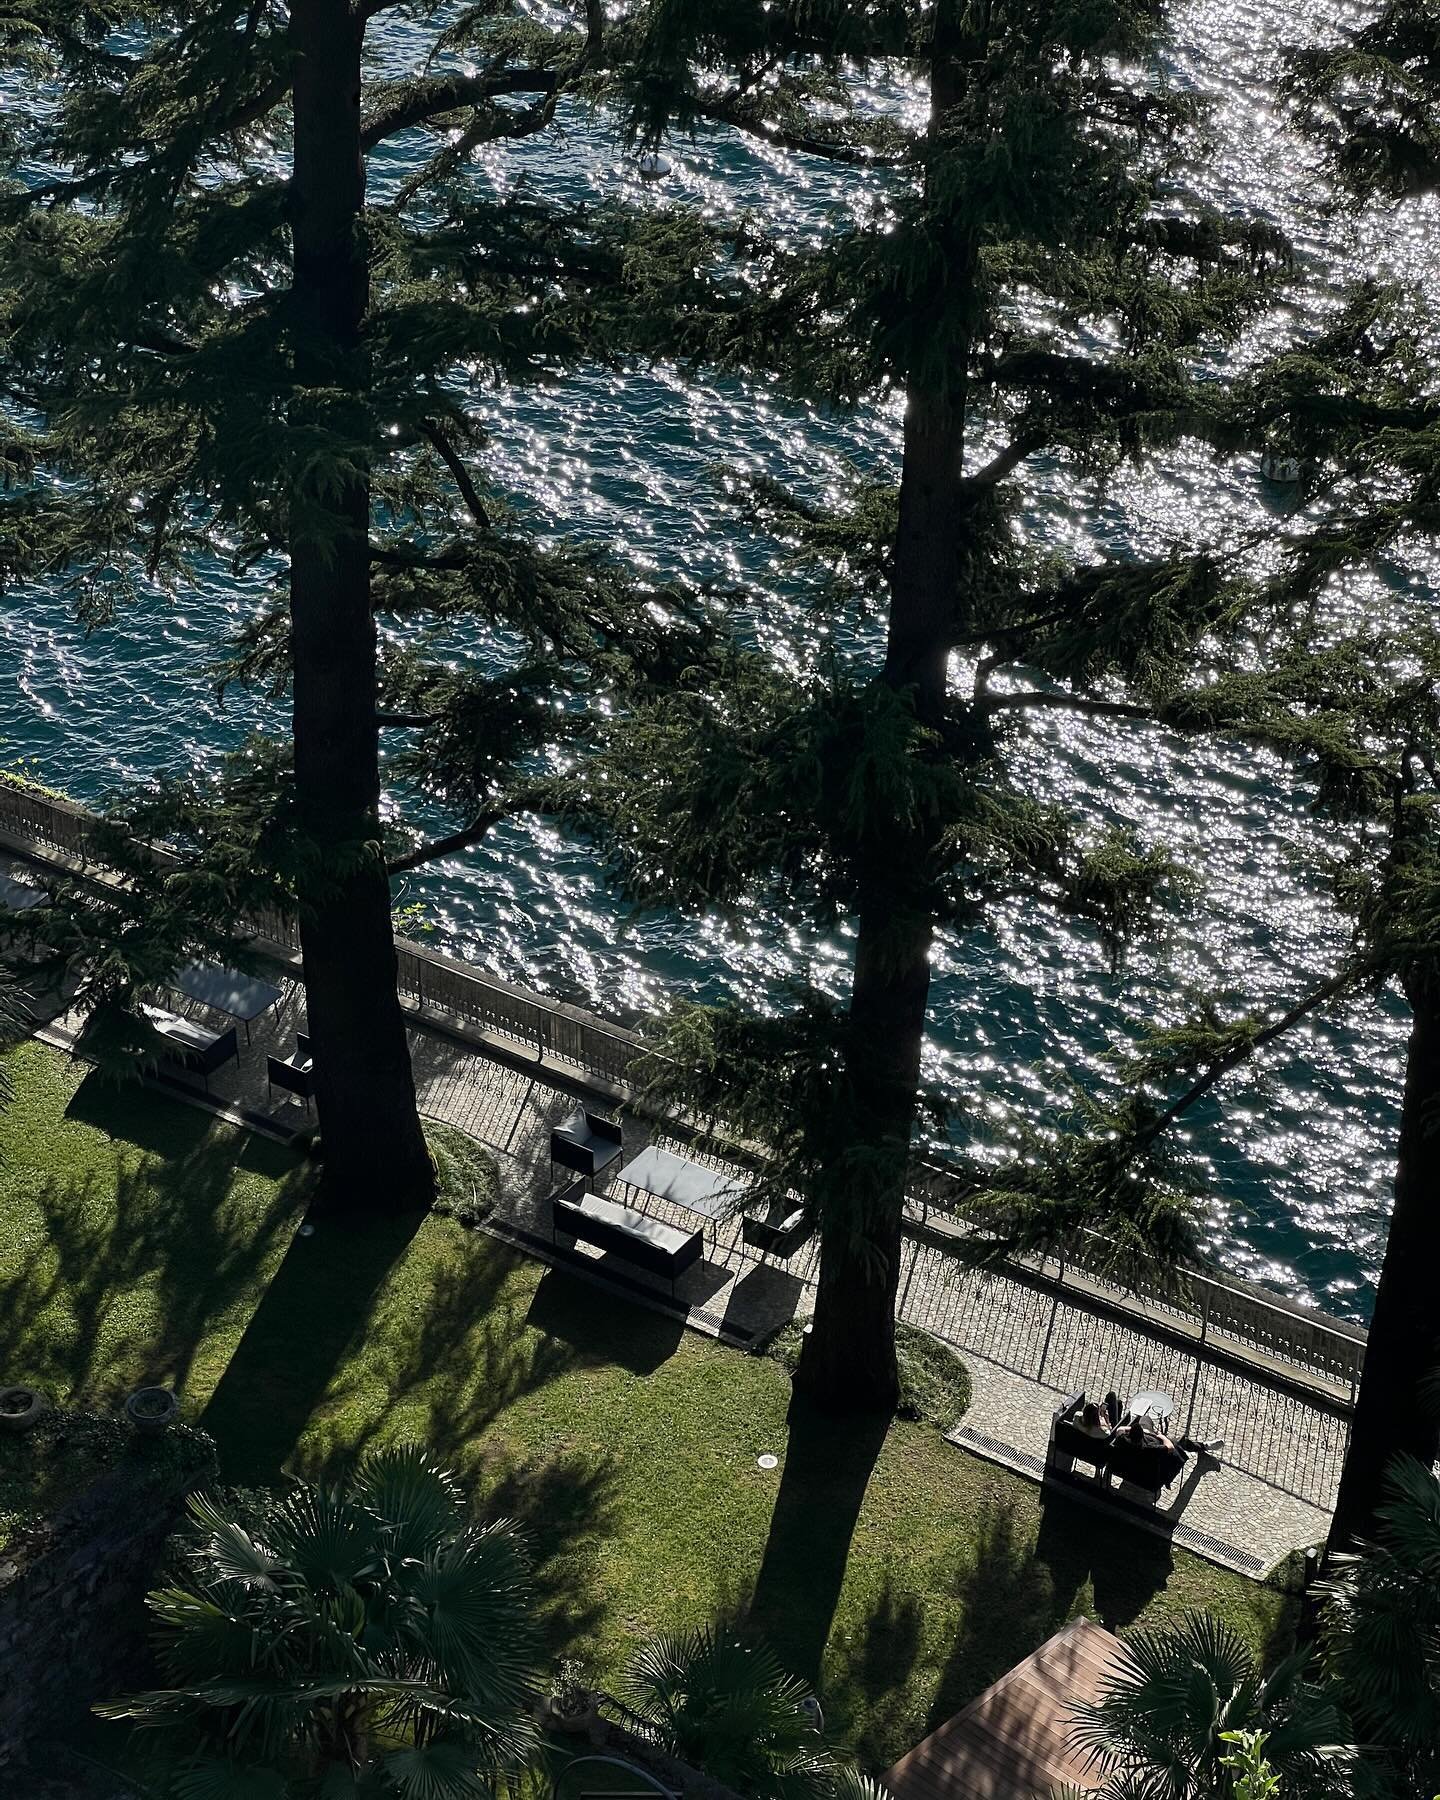 Lake Como | So special to be able to explore these historical villas @villalario @villadelbalbianello @villacarlotta_lakecomo